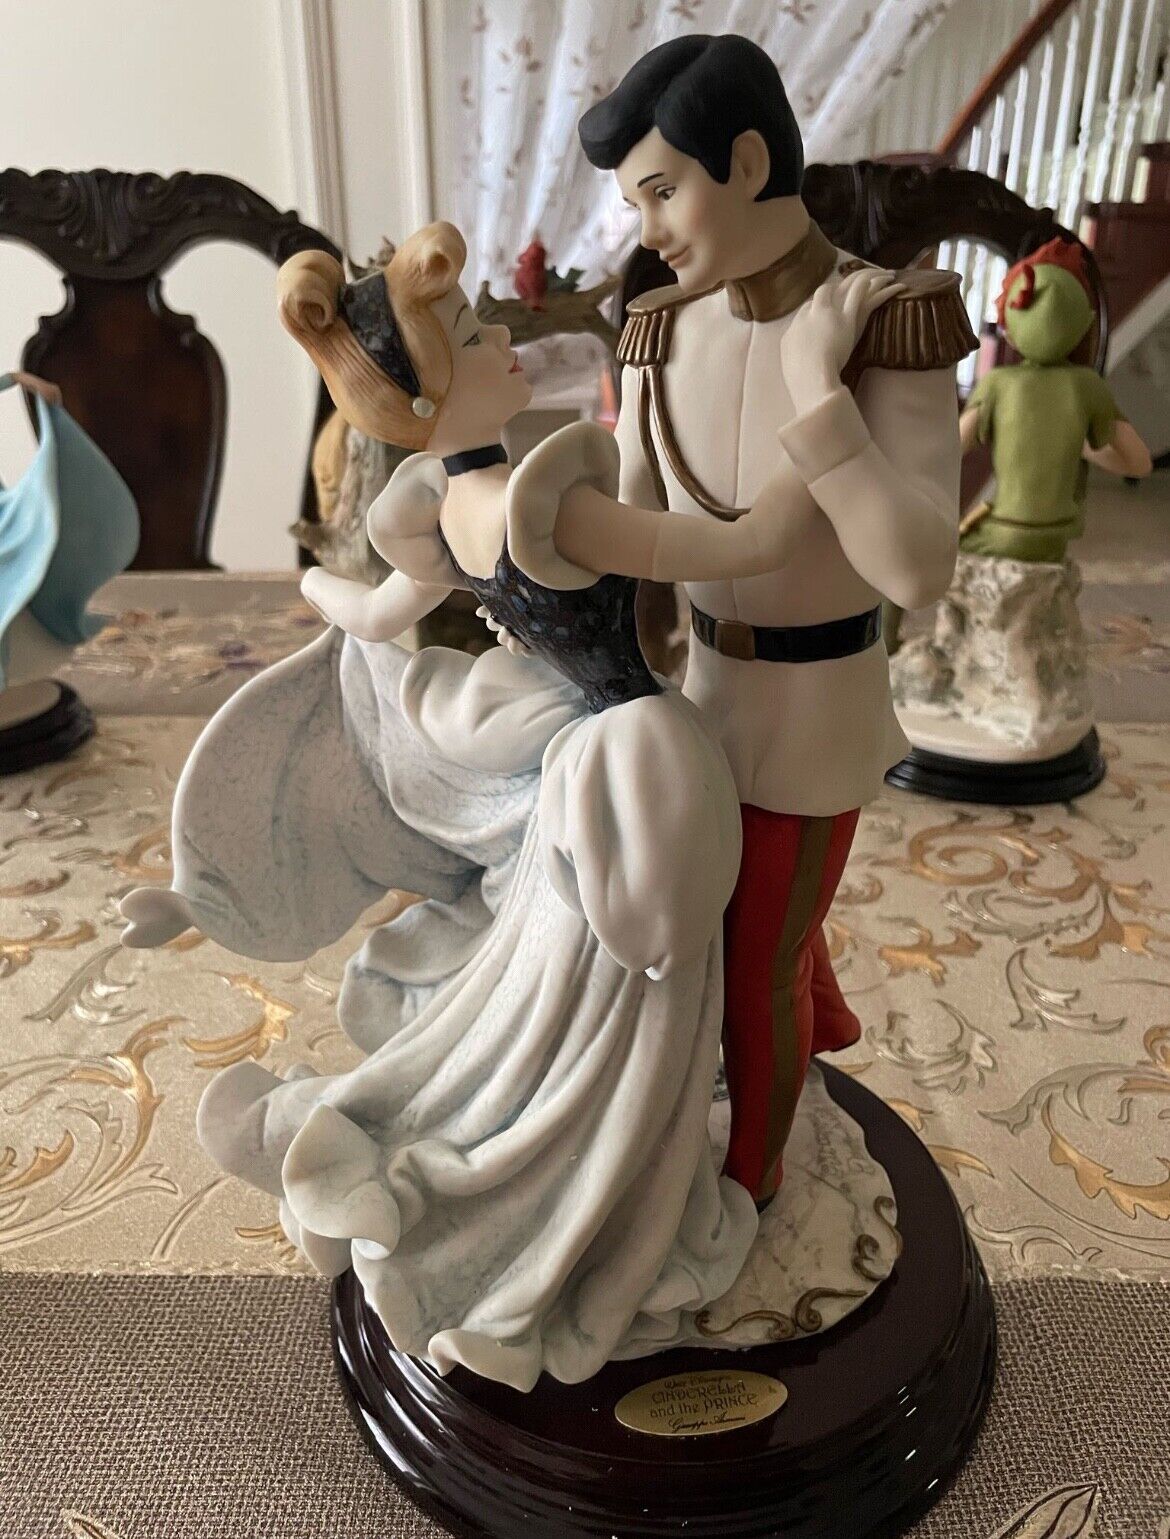 Giuseppe Armani Cinderella and the Prince - Figurine Sculpture